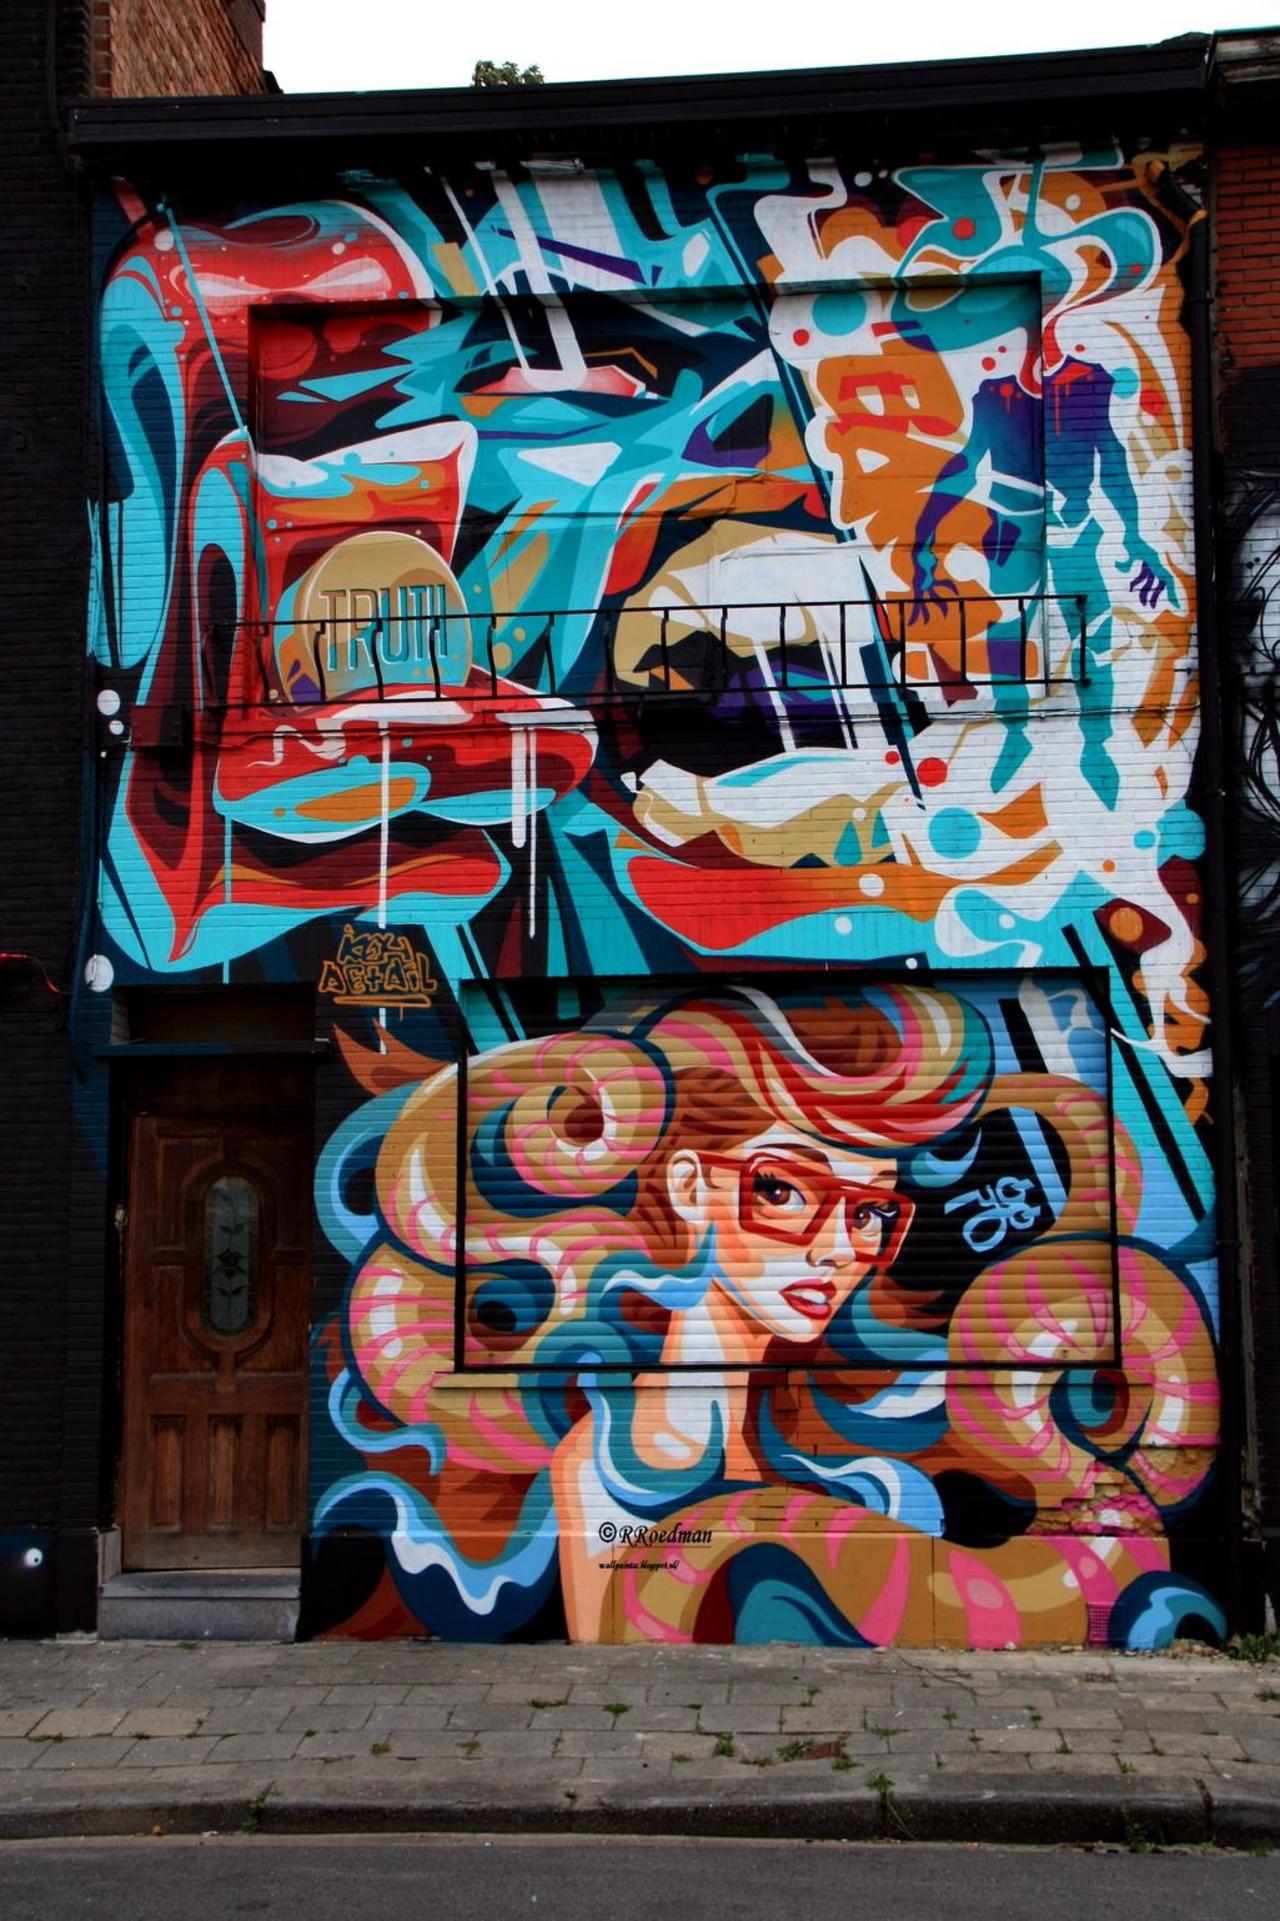 #streetart #graffiti #mural girl with colored hair #Berchem #Antwerpen,2 pics at http://wallpaintss.blogspot.nl http://t.co/UN7vAkvMba